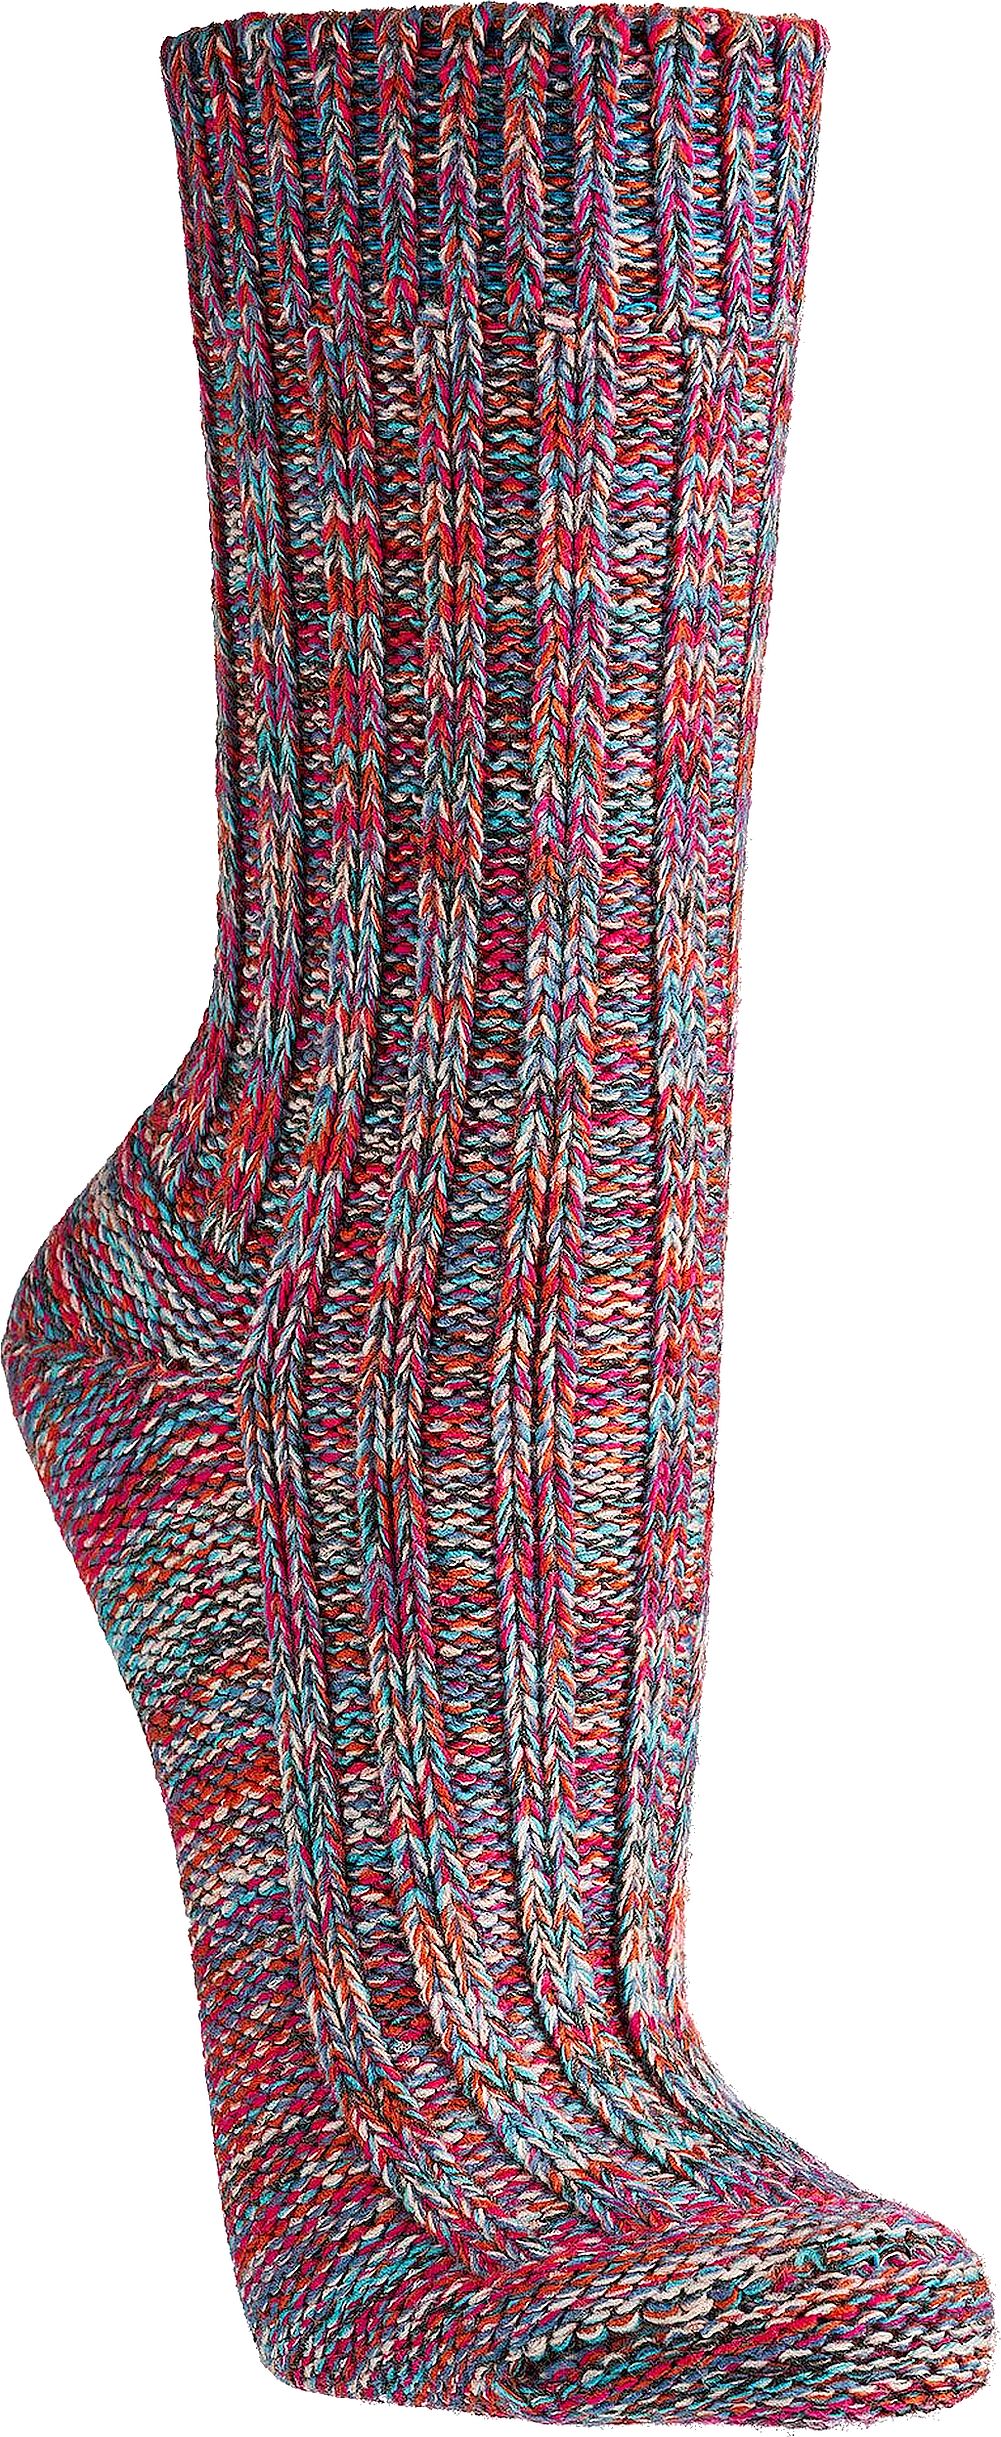  Multi Colour-Baumwoll-Socken  für Teenager, Damen und Herren schöne dicke Qualität   3 Paar